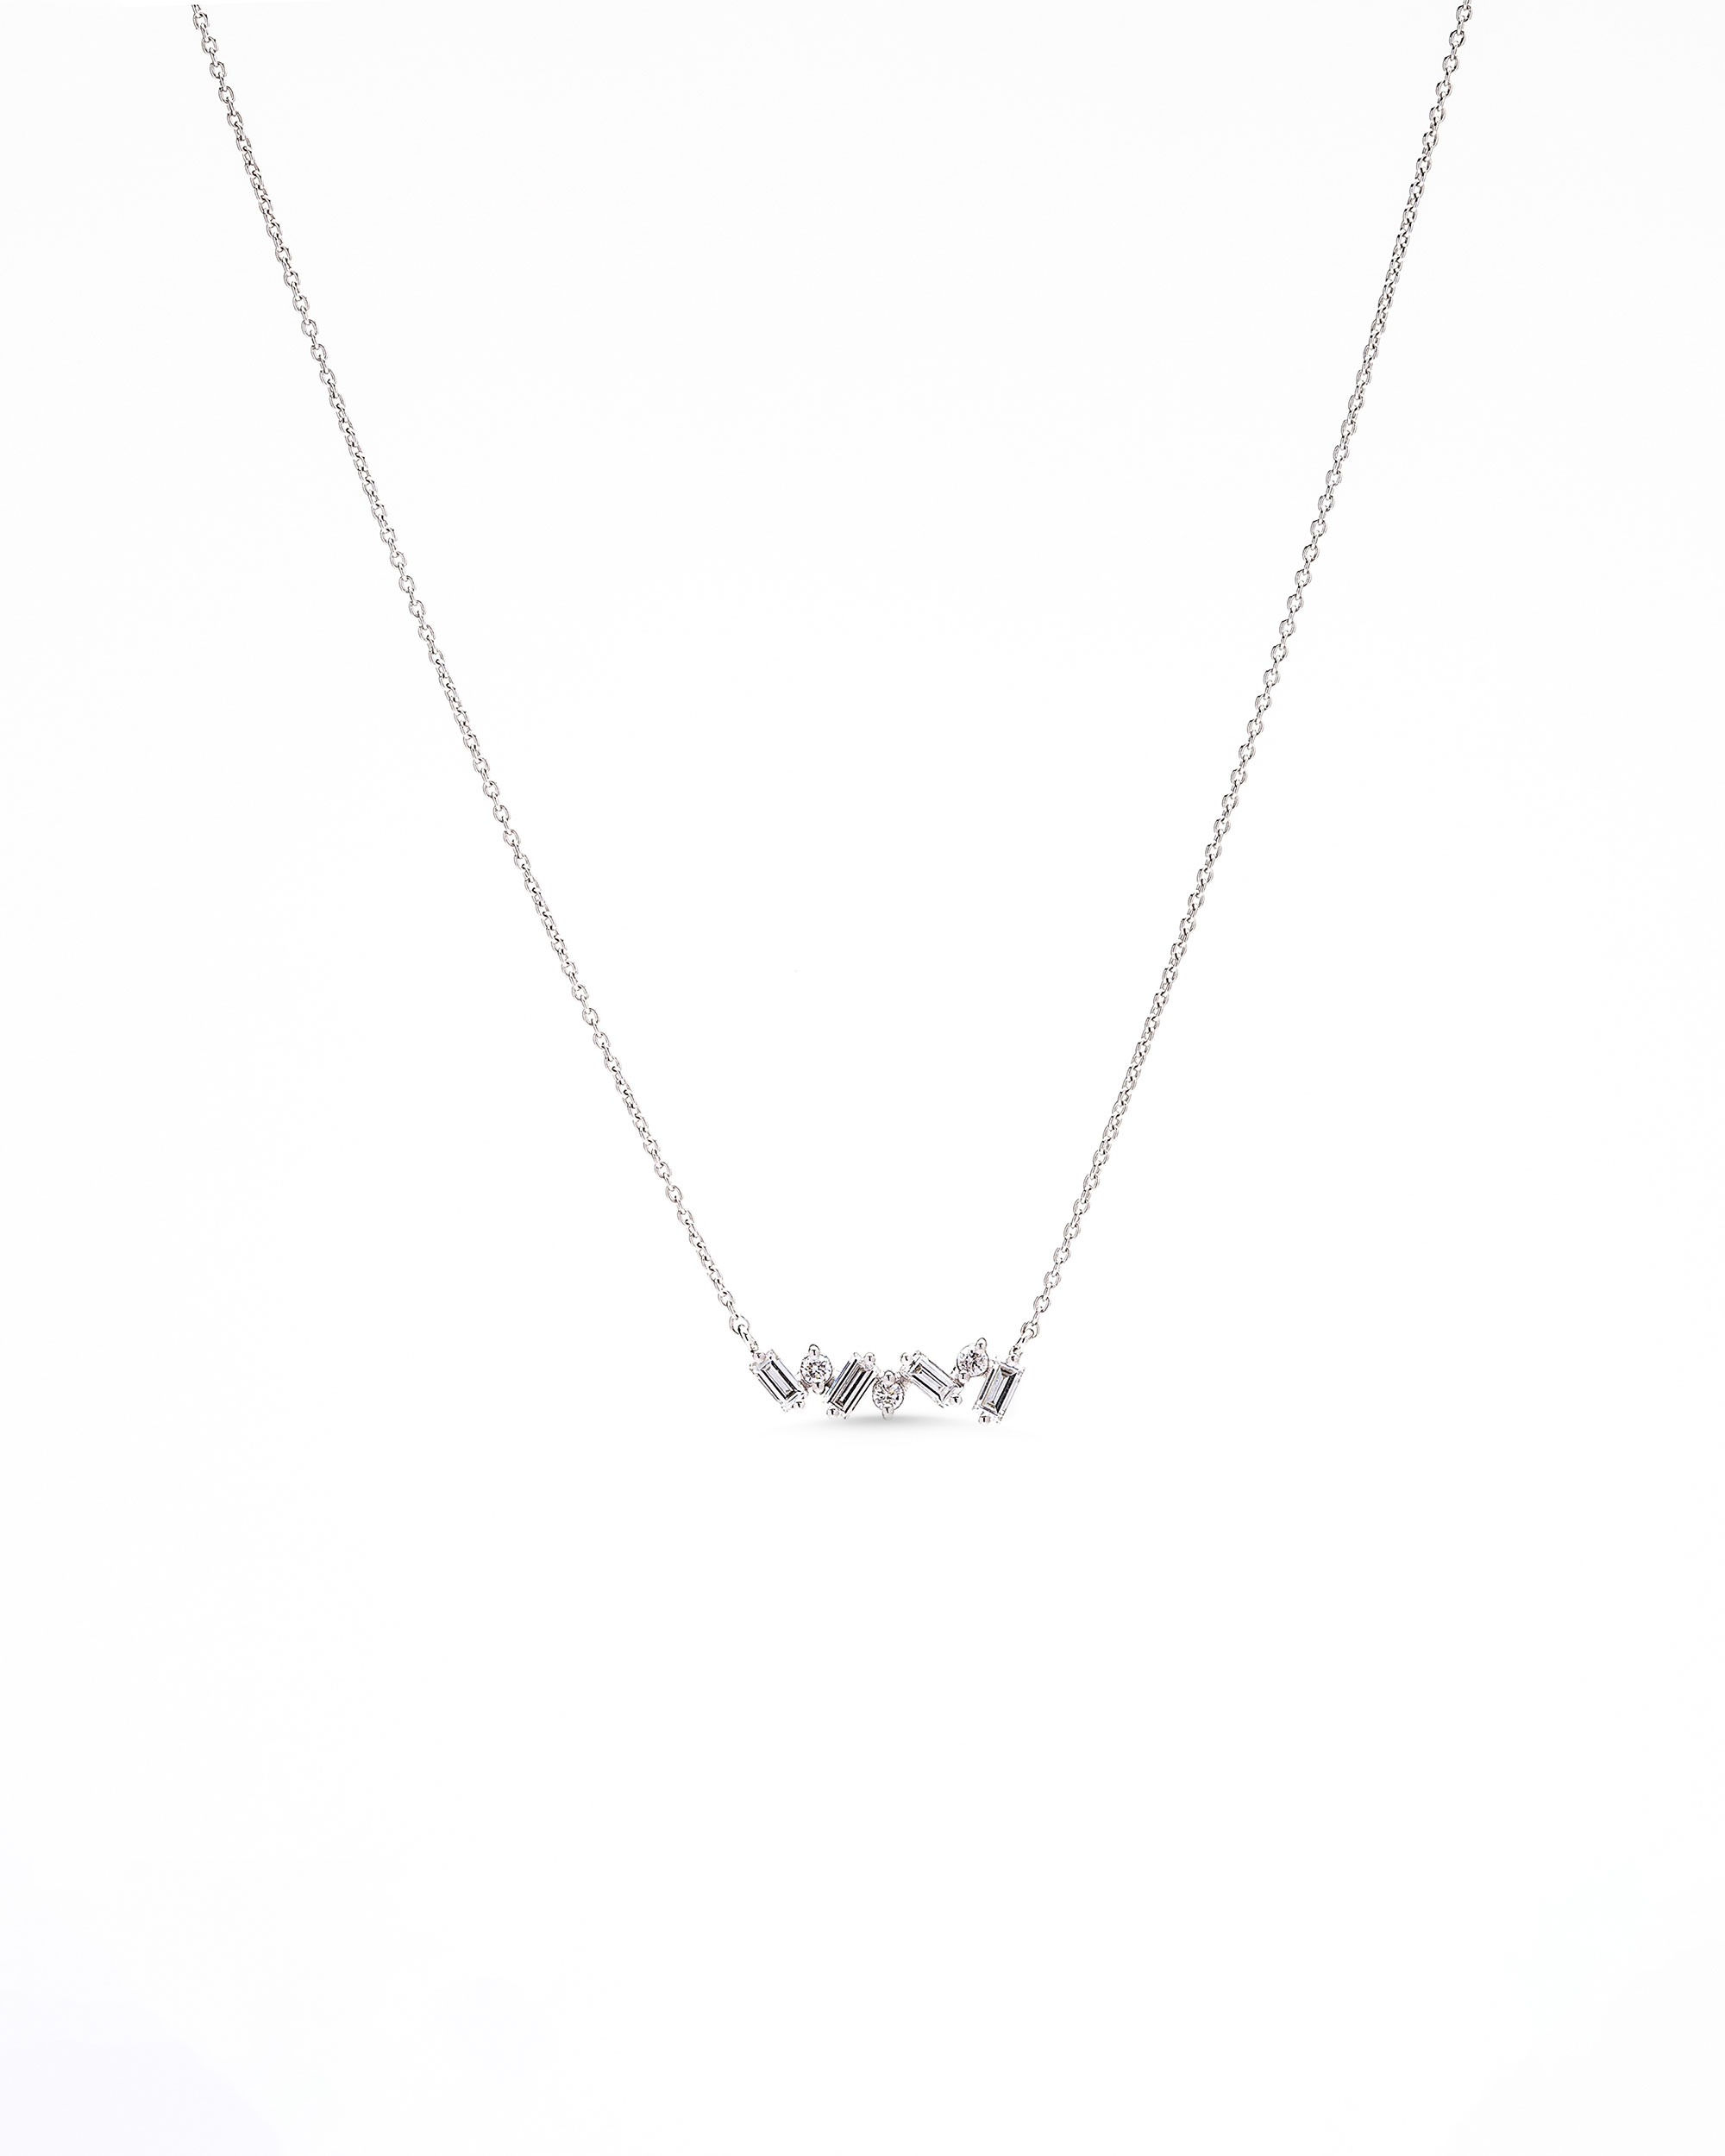 Asymmetric Baguette Diamond Necklaces - Spanos